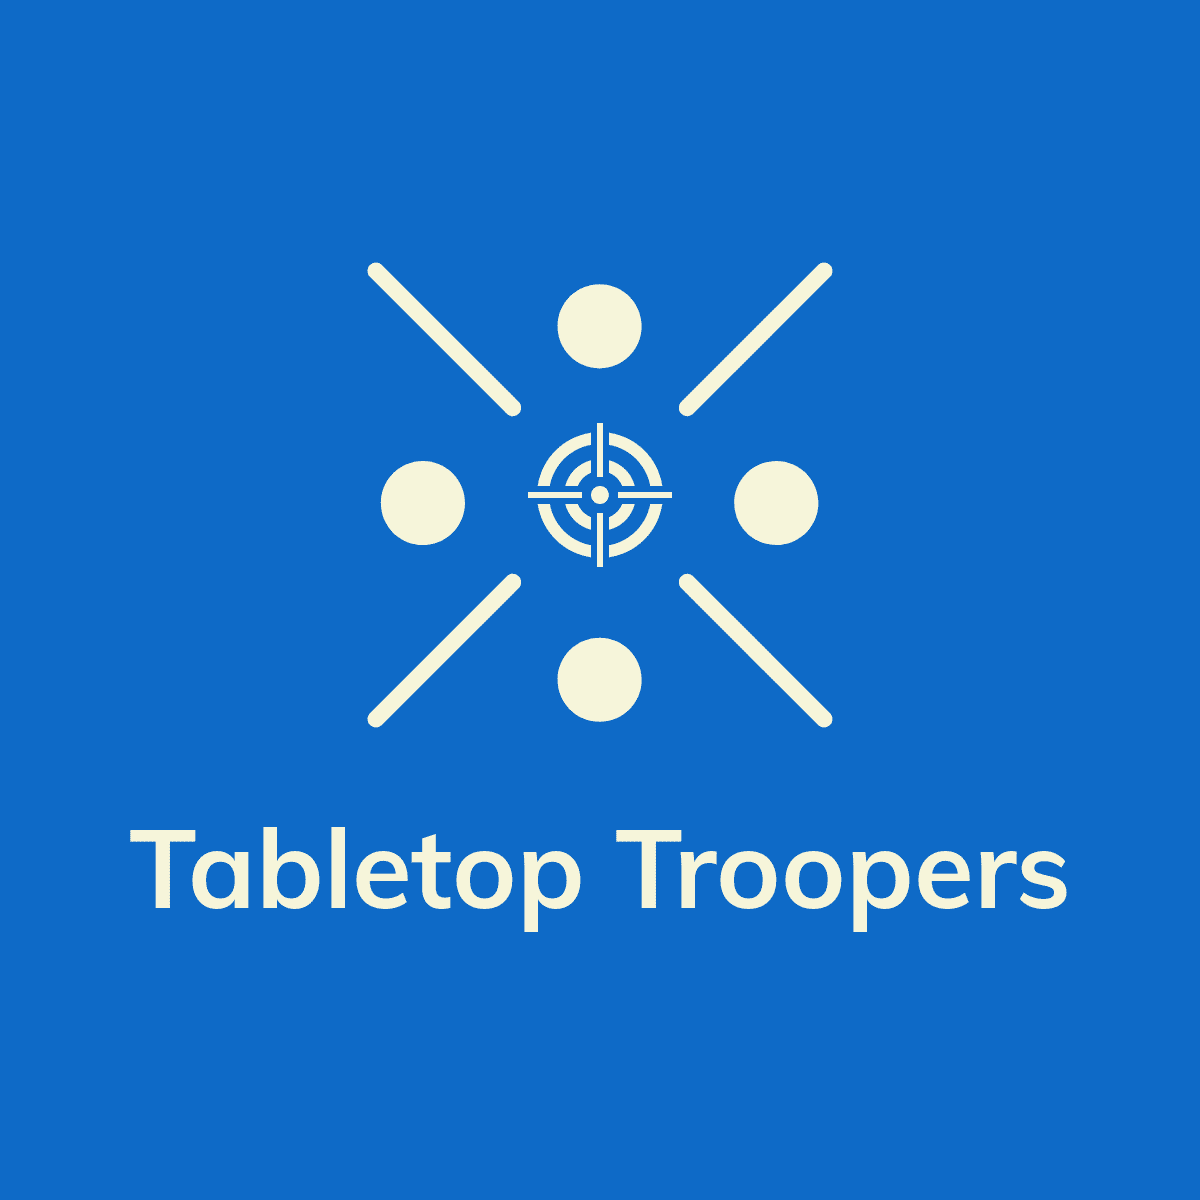 Tabletop Troopers